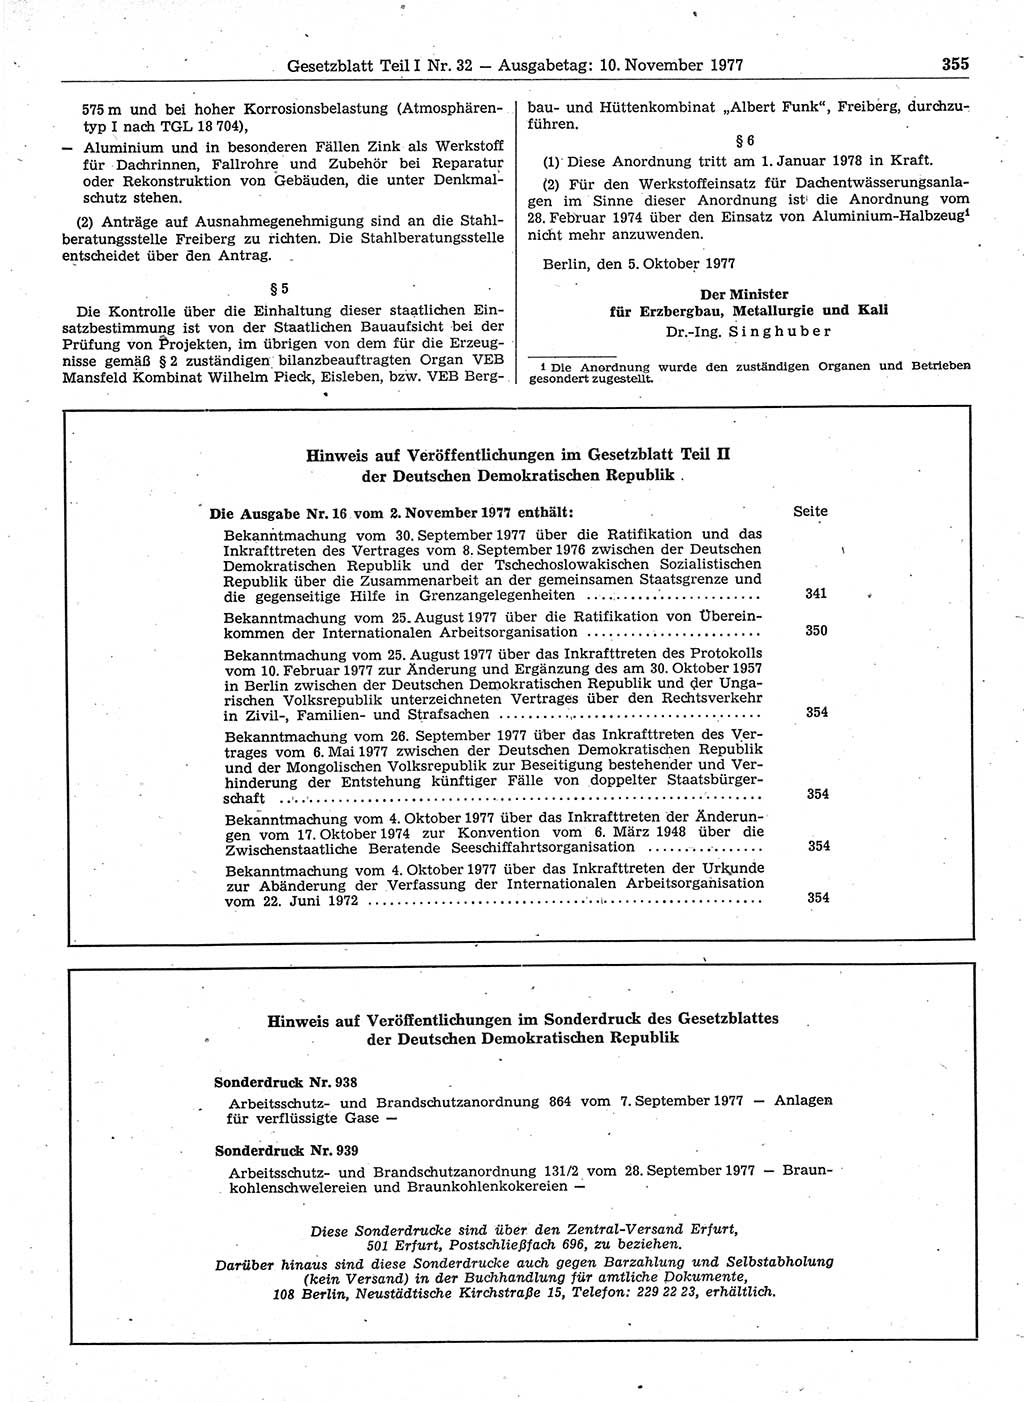 Gesetzblatt (GBl.) der Deutschen Demokratischen Republik (DDR) Teil Ⅰ 1977, Seite 355 (GBl. DDR Ⅰ 1977, S. 355)